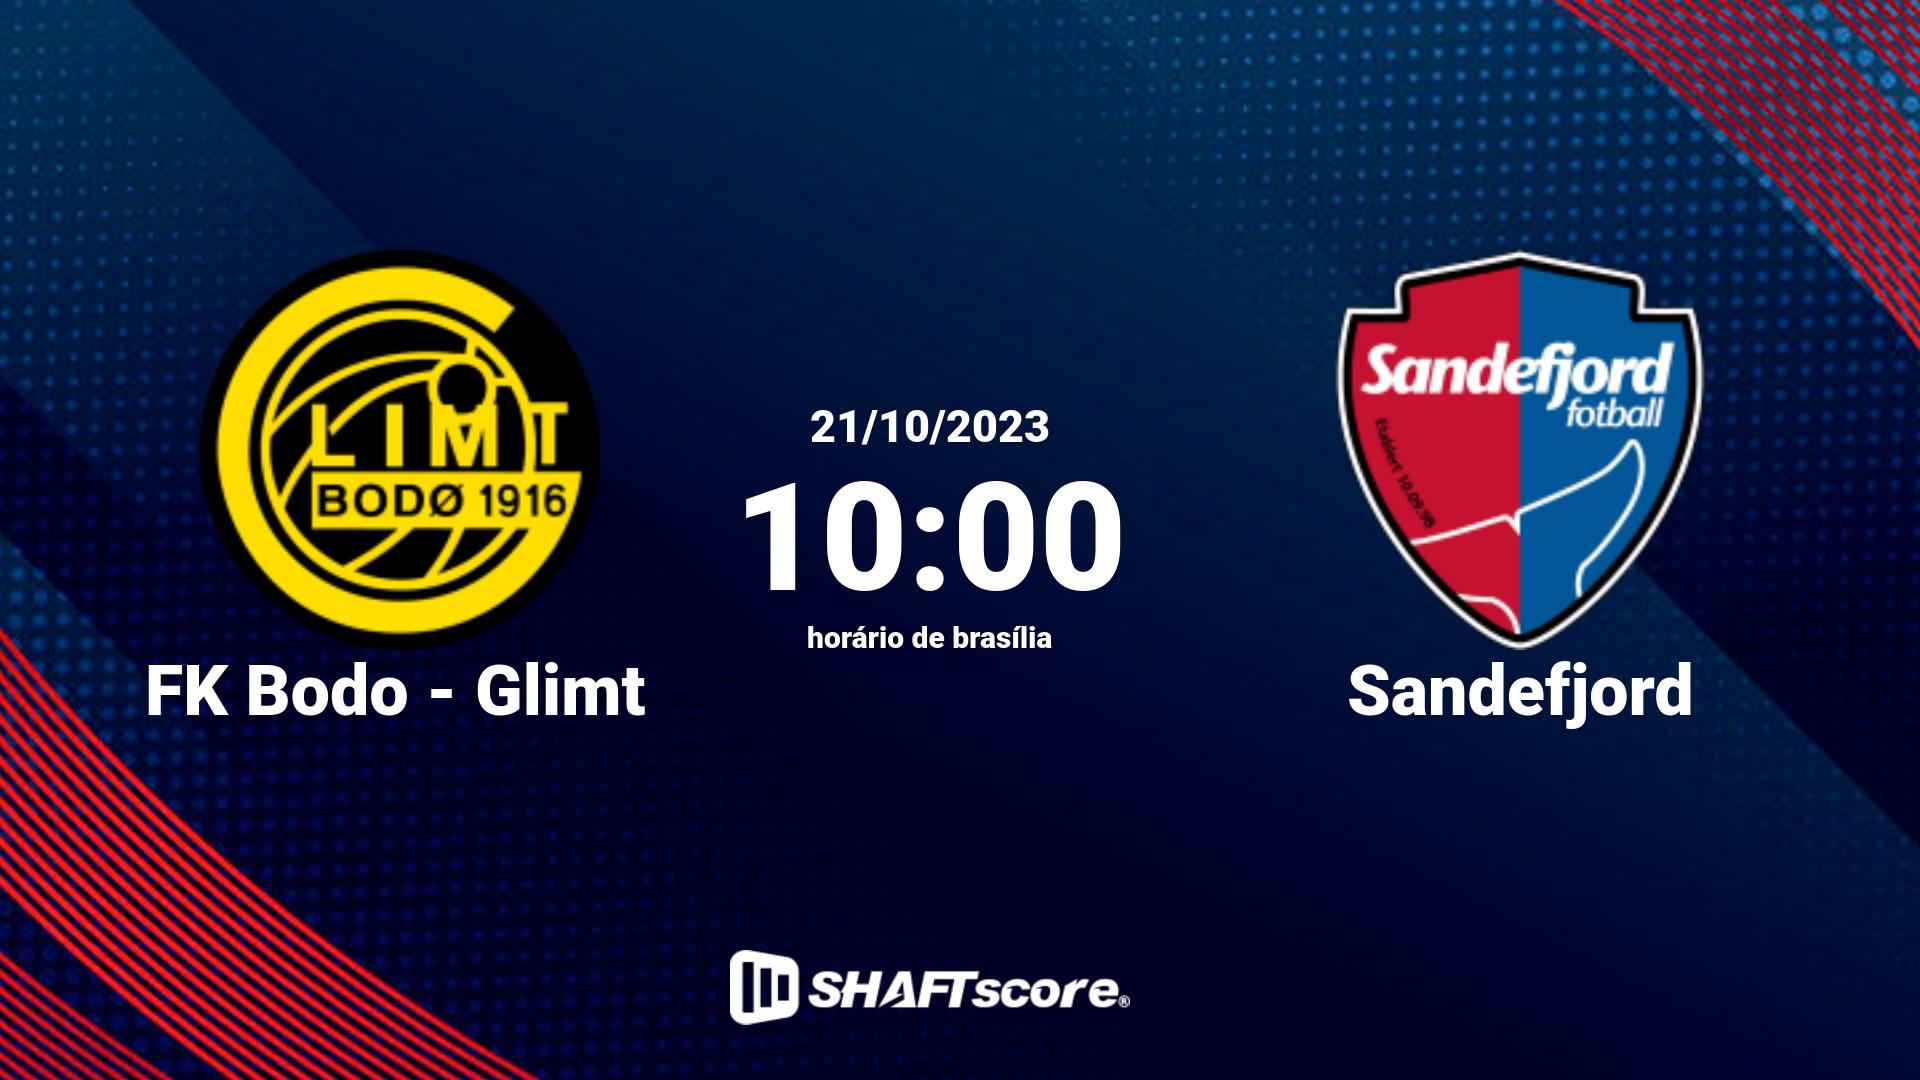 Estatísticas do jogo FK Bodo - Glimt vs Sandefjord 21.10 10:00